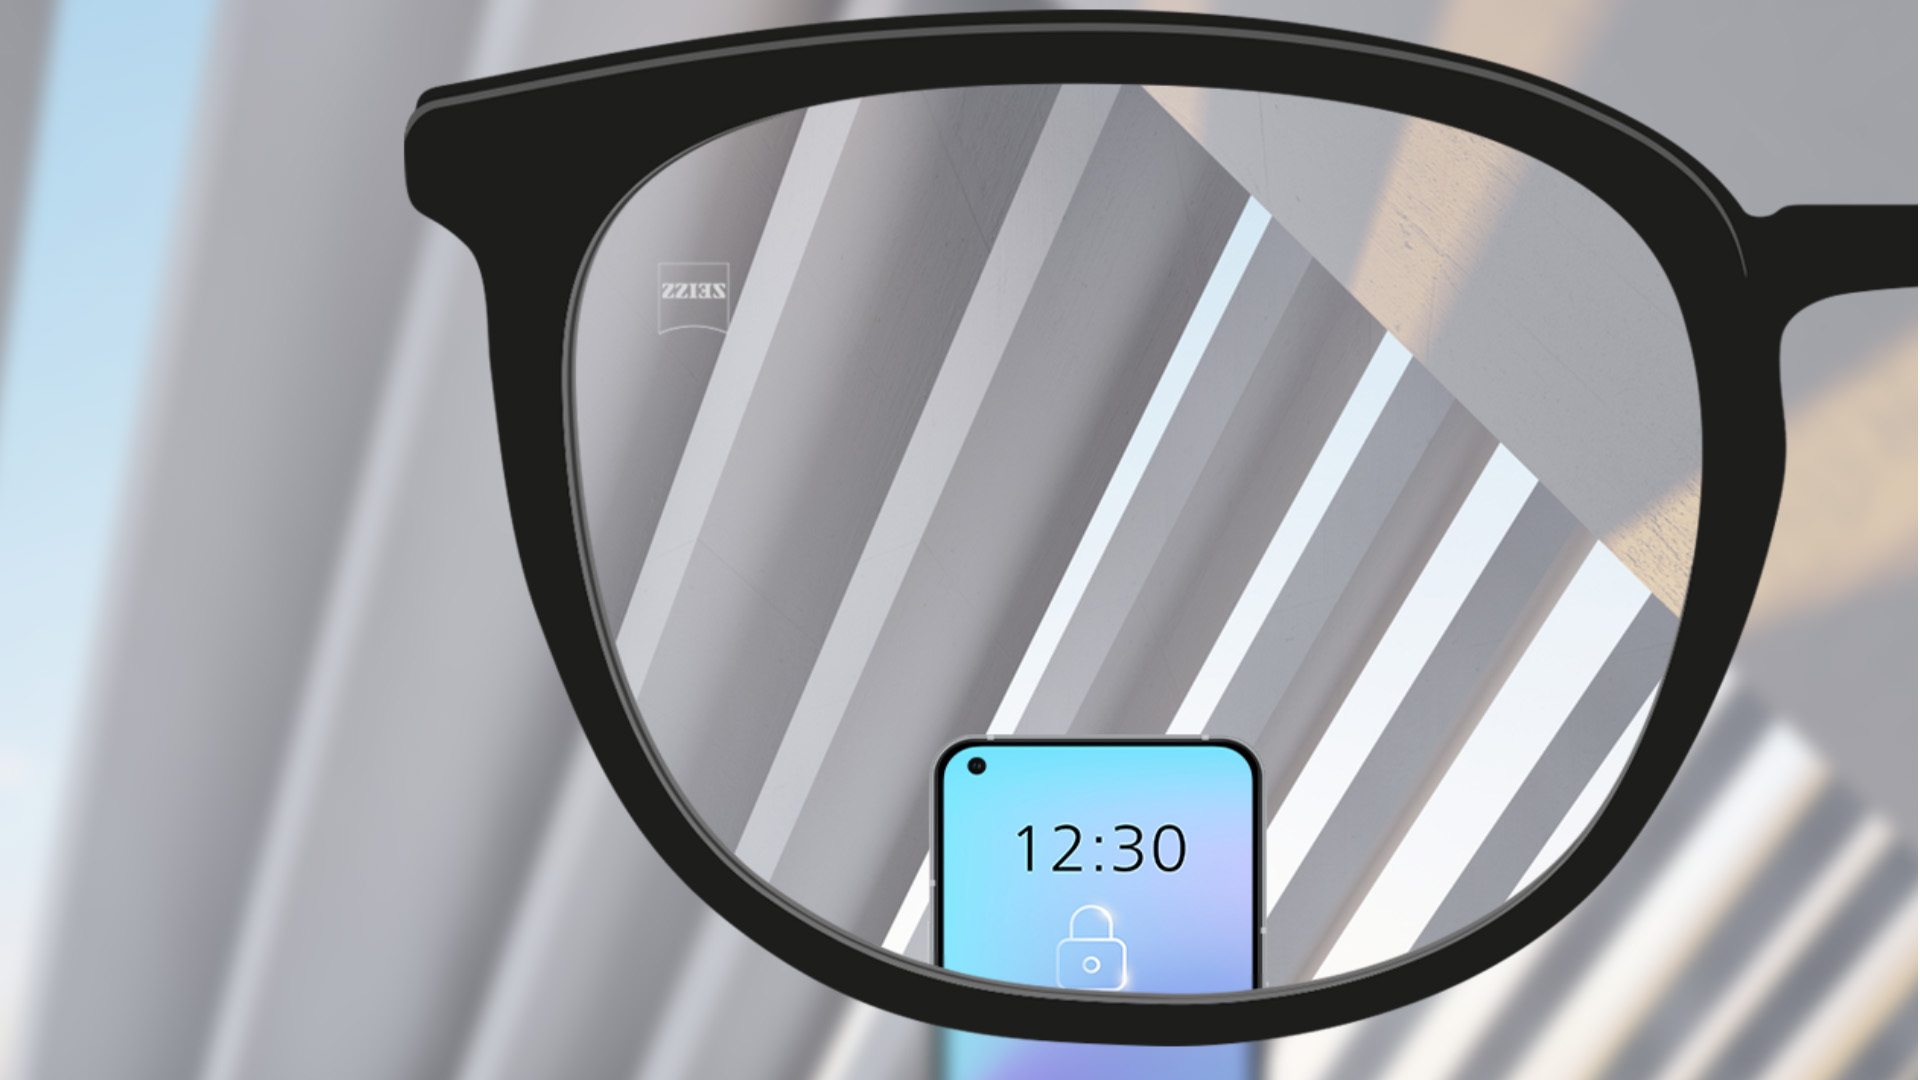 Immagine del punto di visione attraverso lenti monofocali ZEISS SmartLife con uno smartphone e la lenta completamente trasparente.